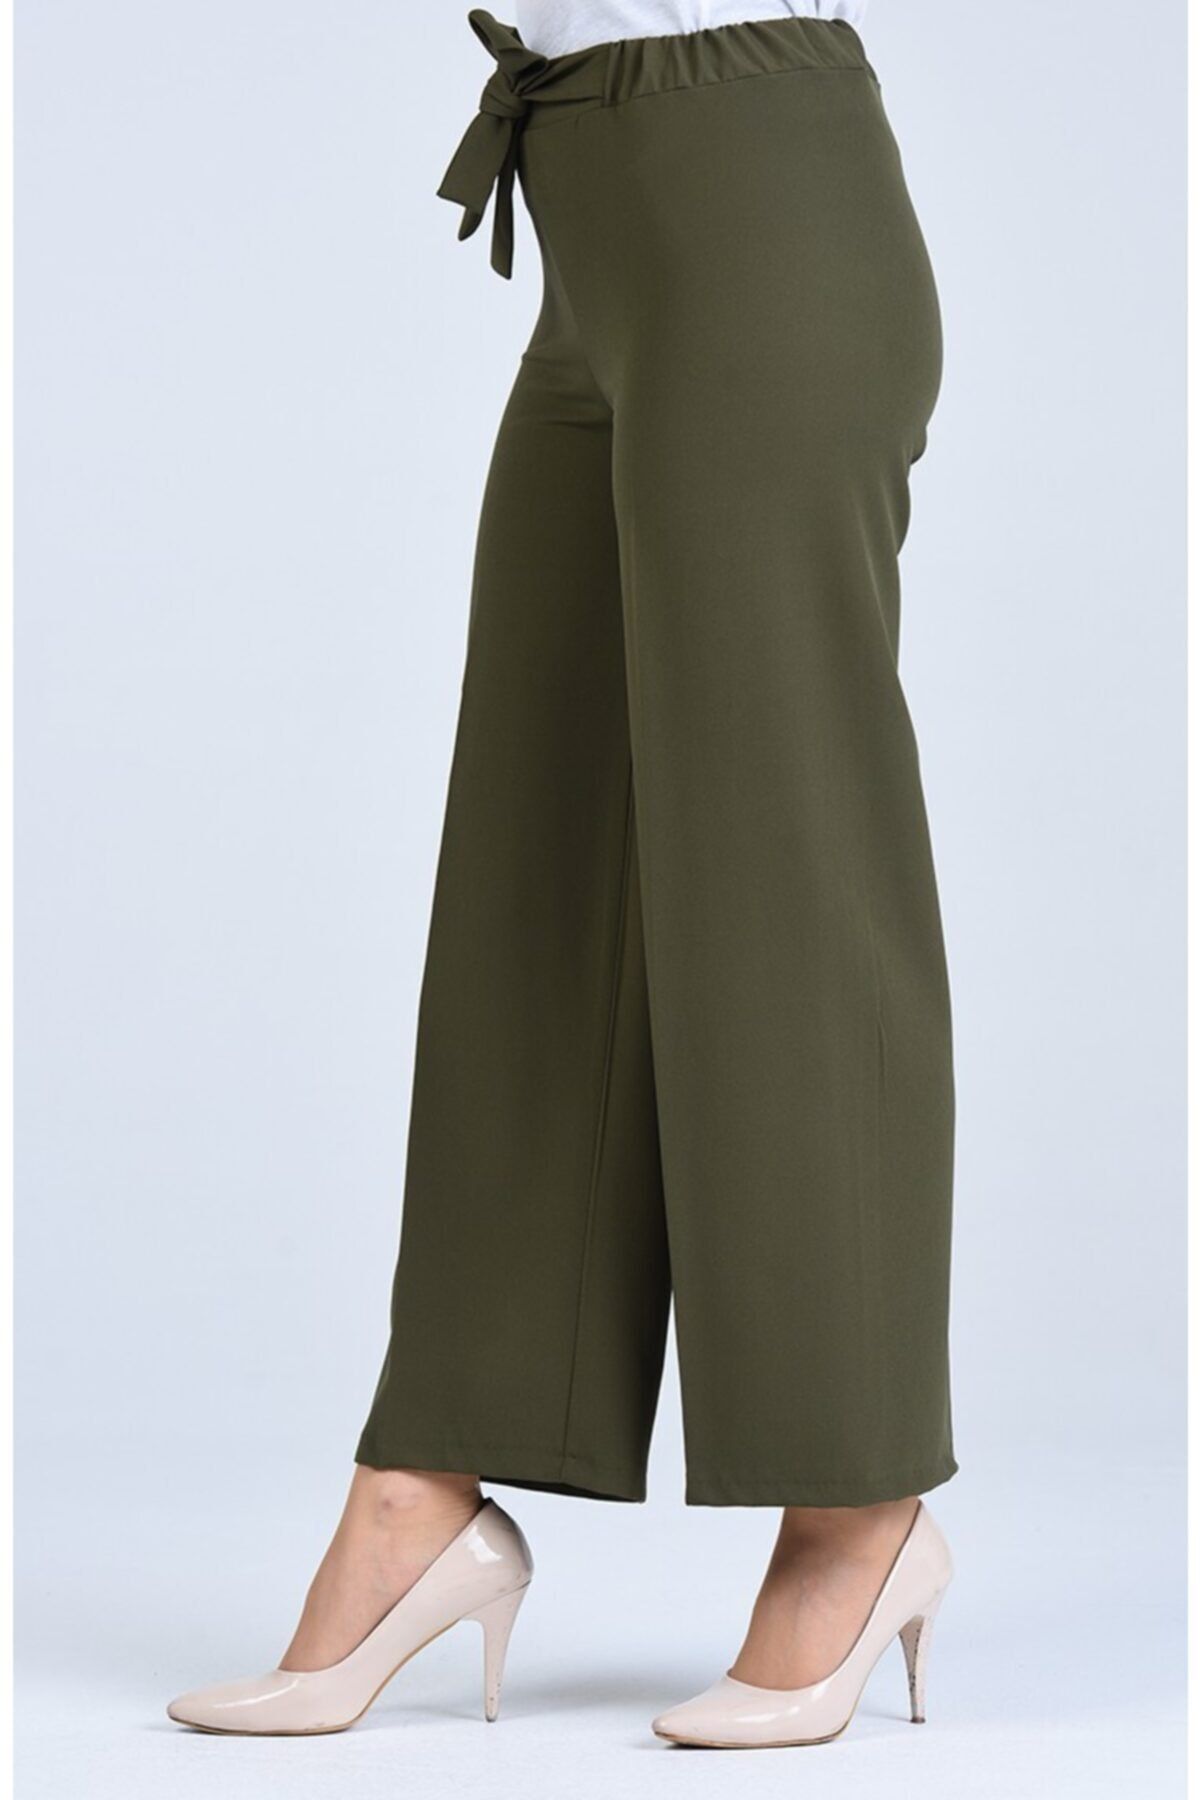 Moda Bu Kadın Haki Yeşil Bel Lastikli Bağlamalı Bol Paça Pantolon